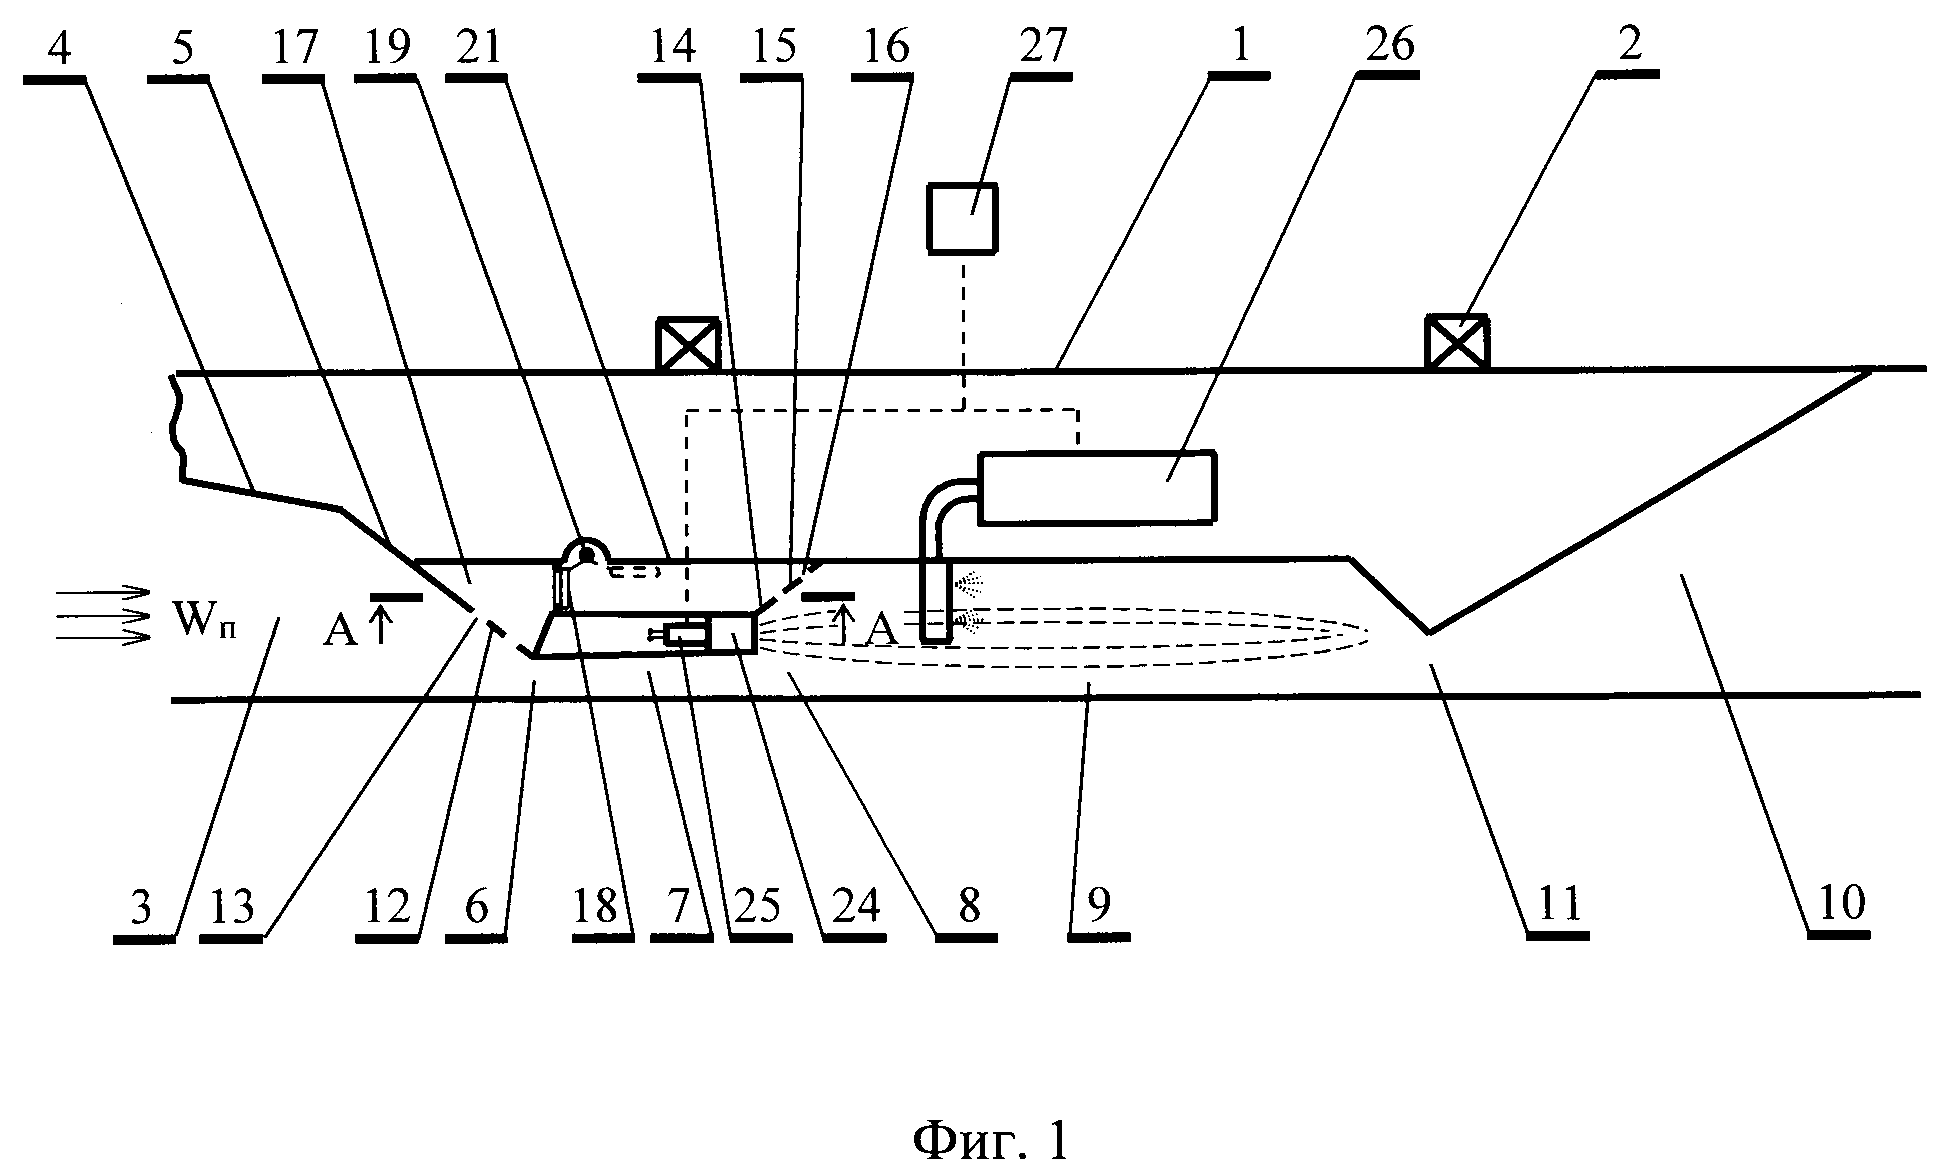 Сверхзвуковой прямоточный воздушно-реактивный двигатель (варианты)